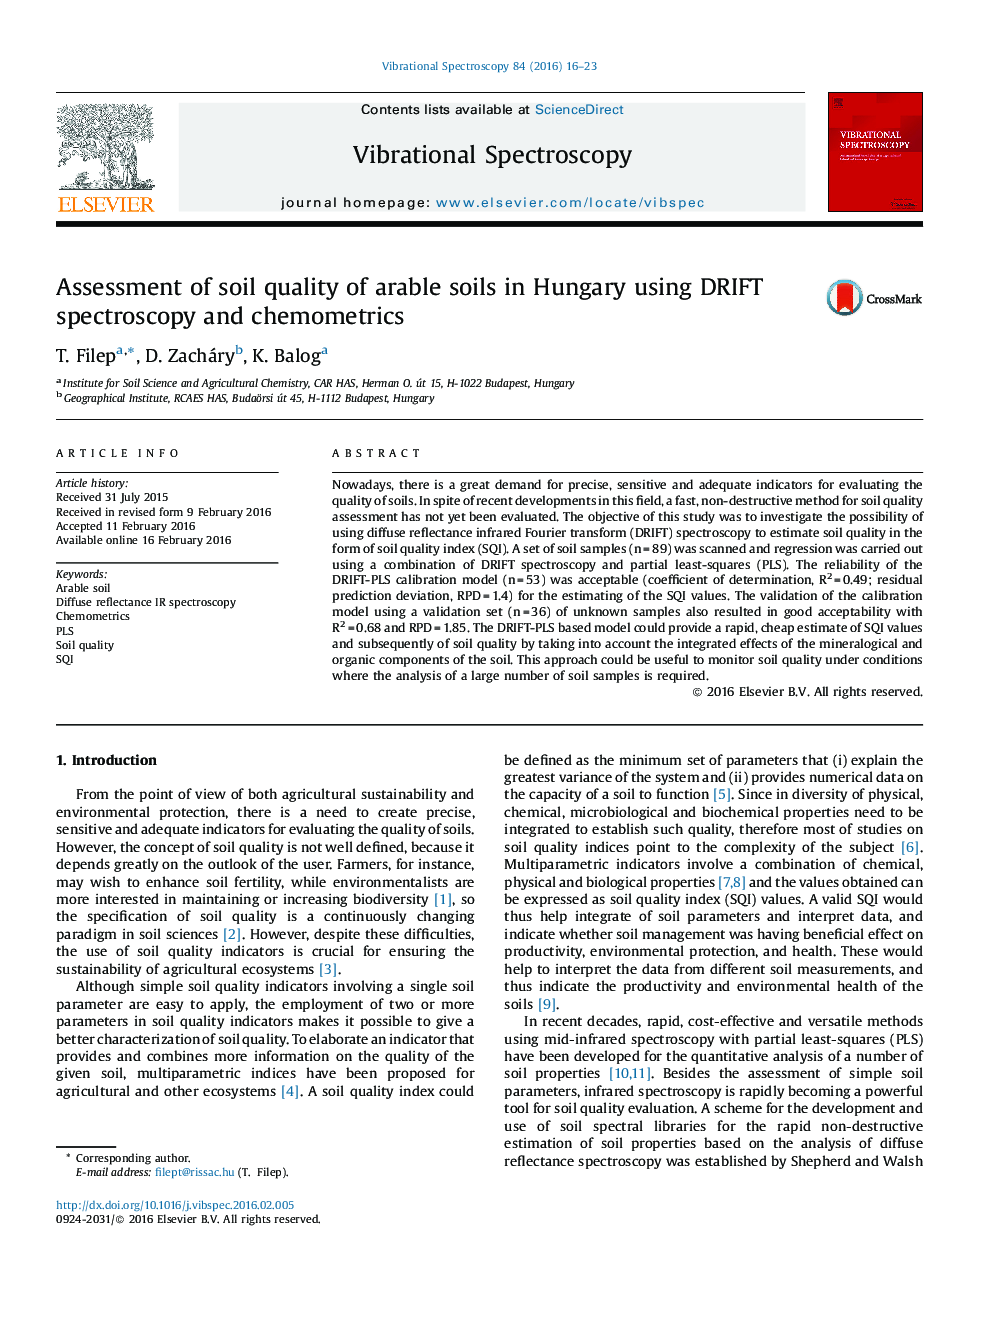 Assessment of soil quality of arable soils in Hungary using DRIFT spectroscopy and chemometrics